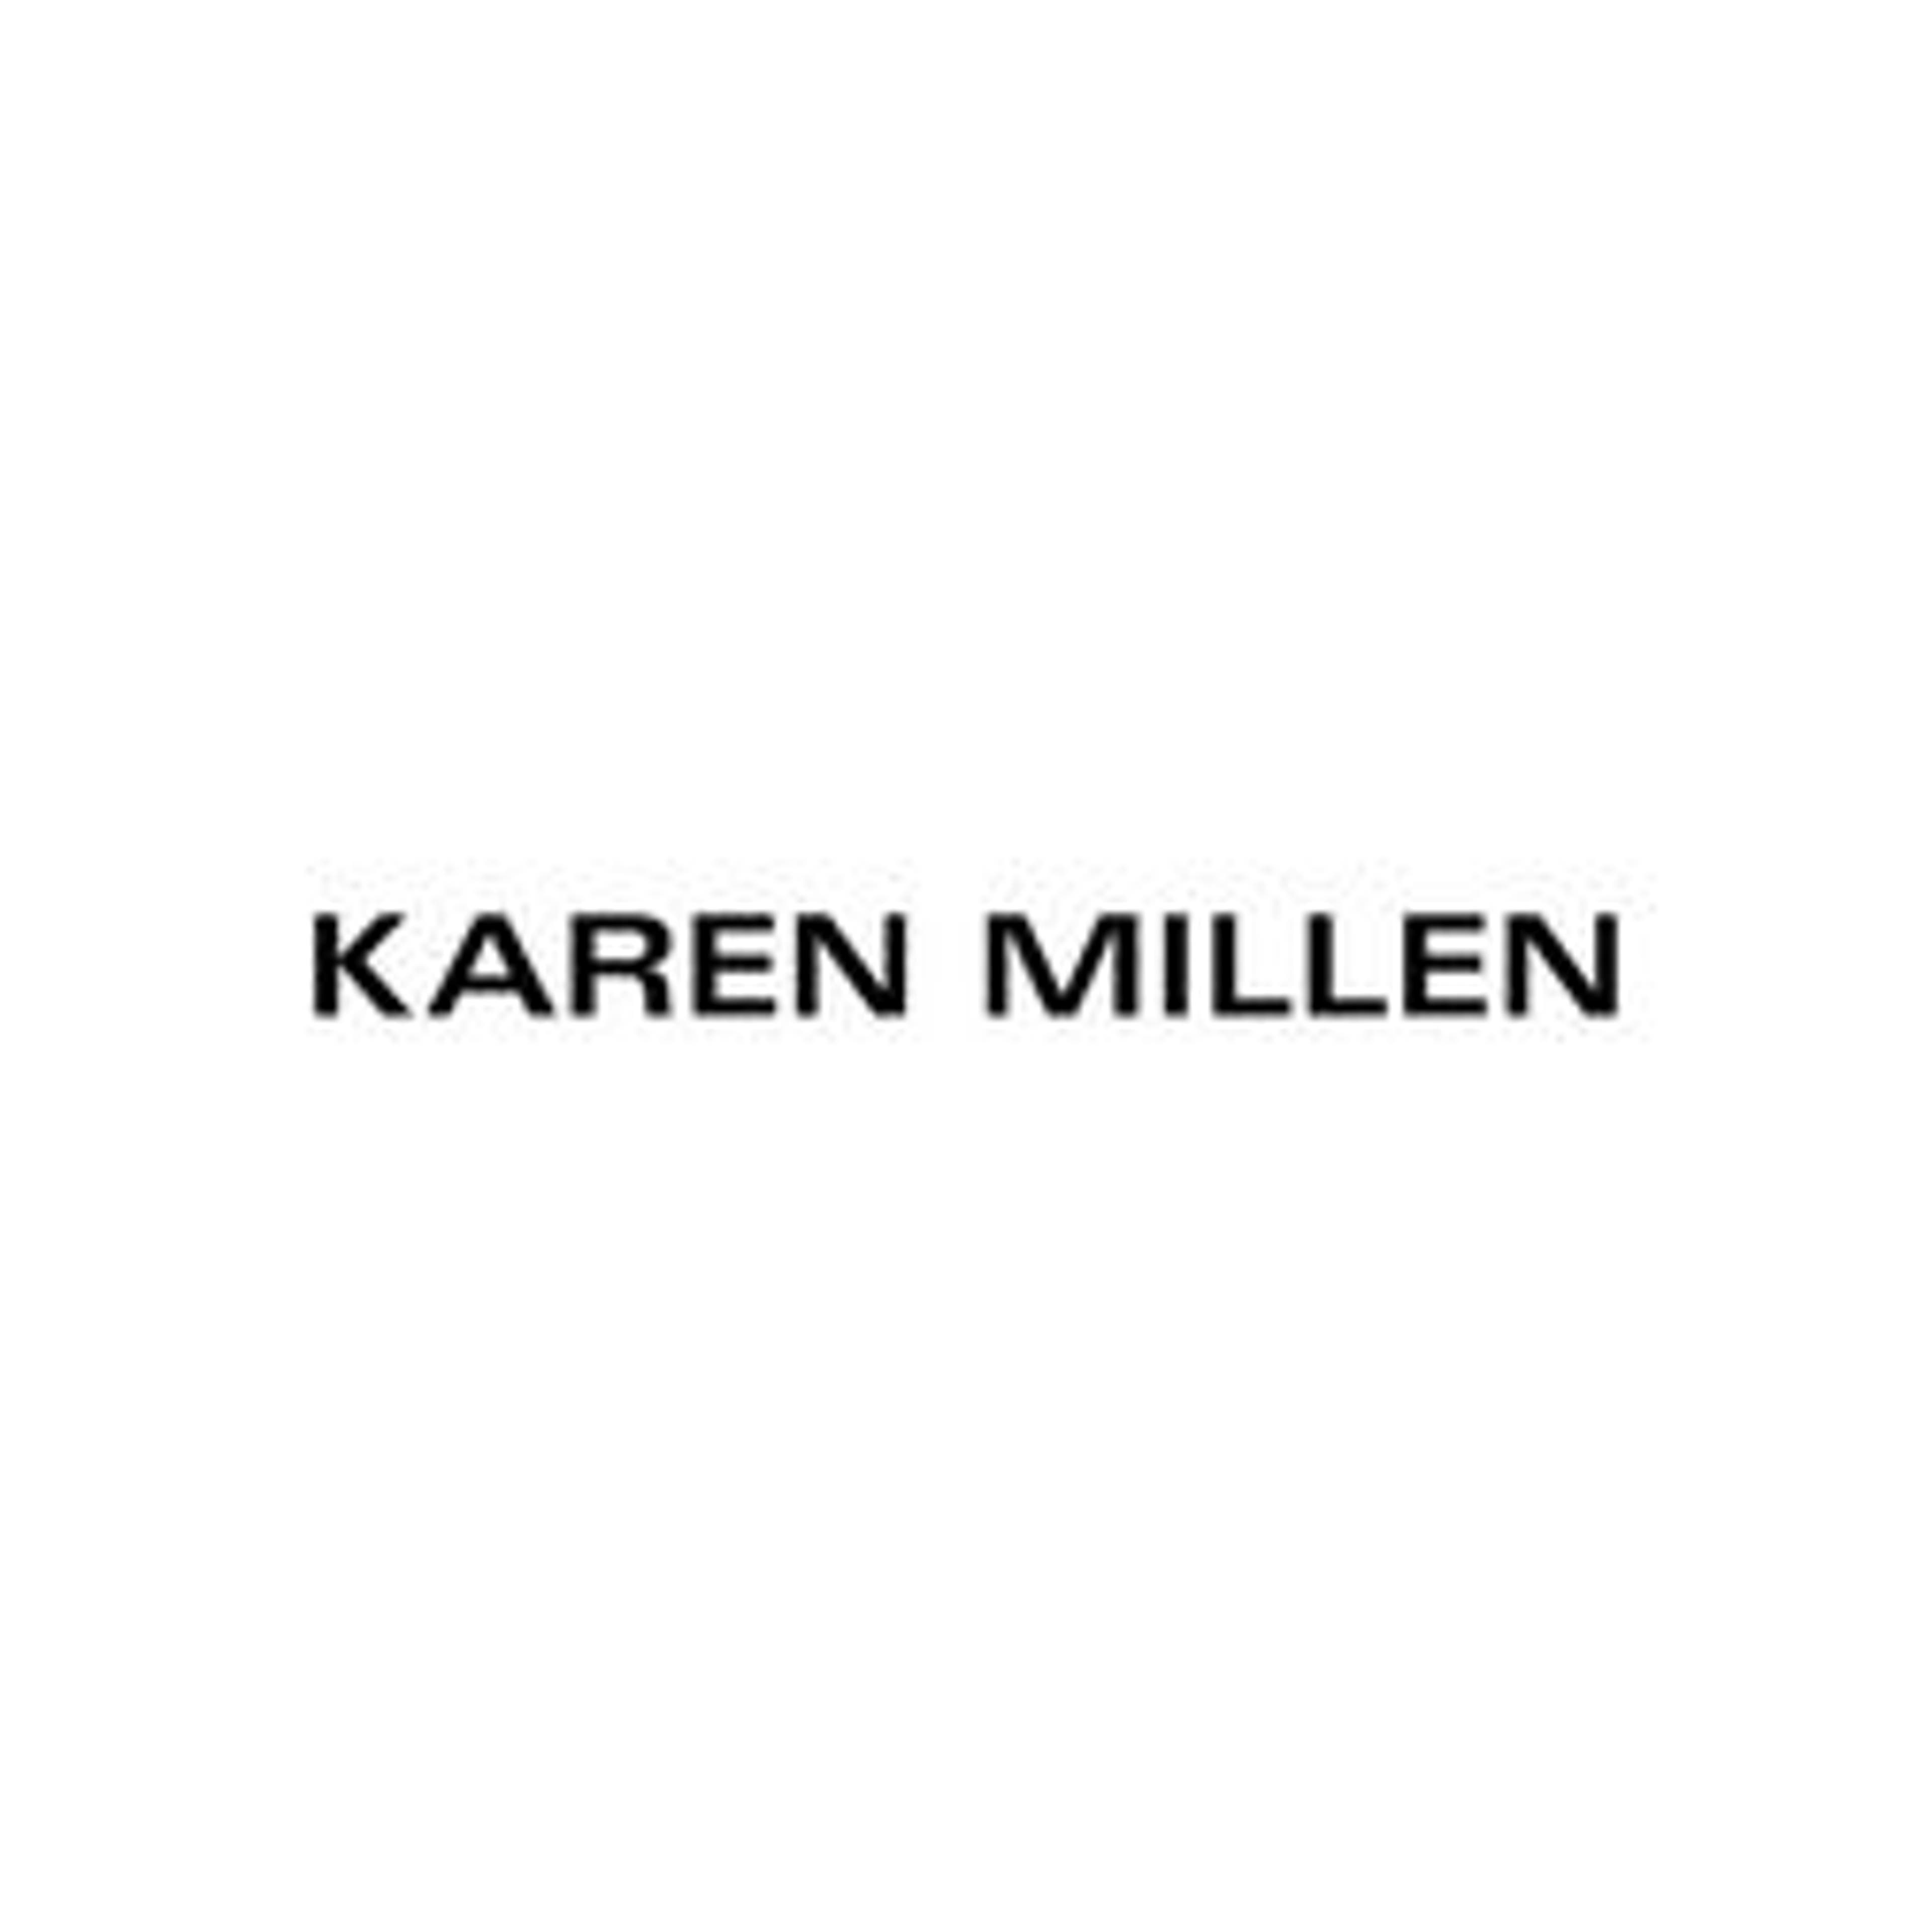  Karen Millen 